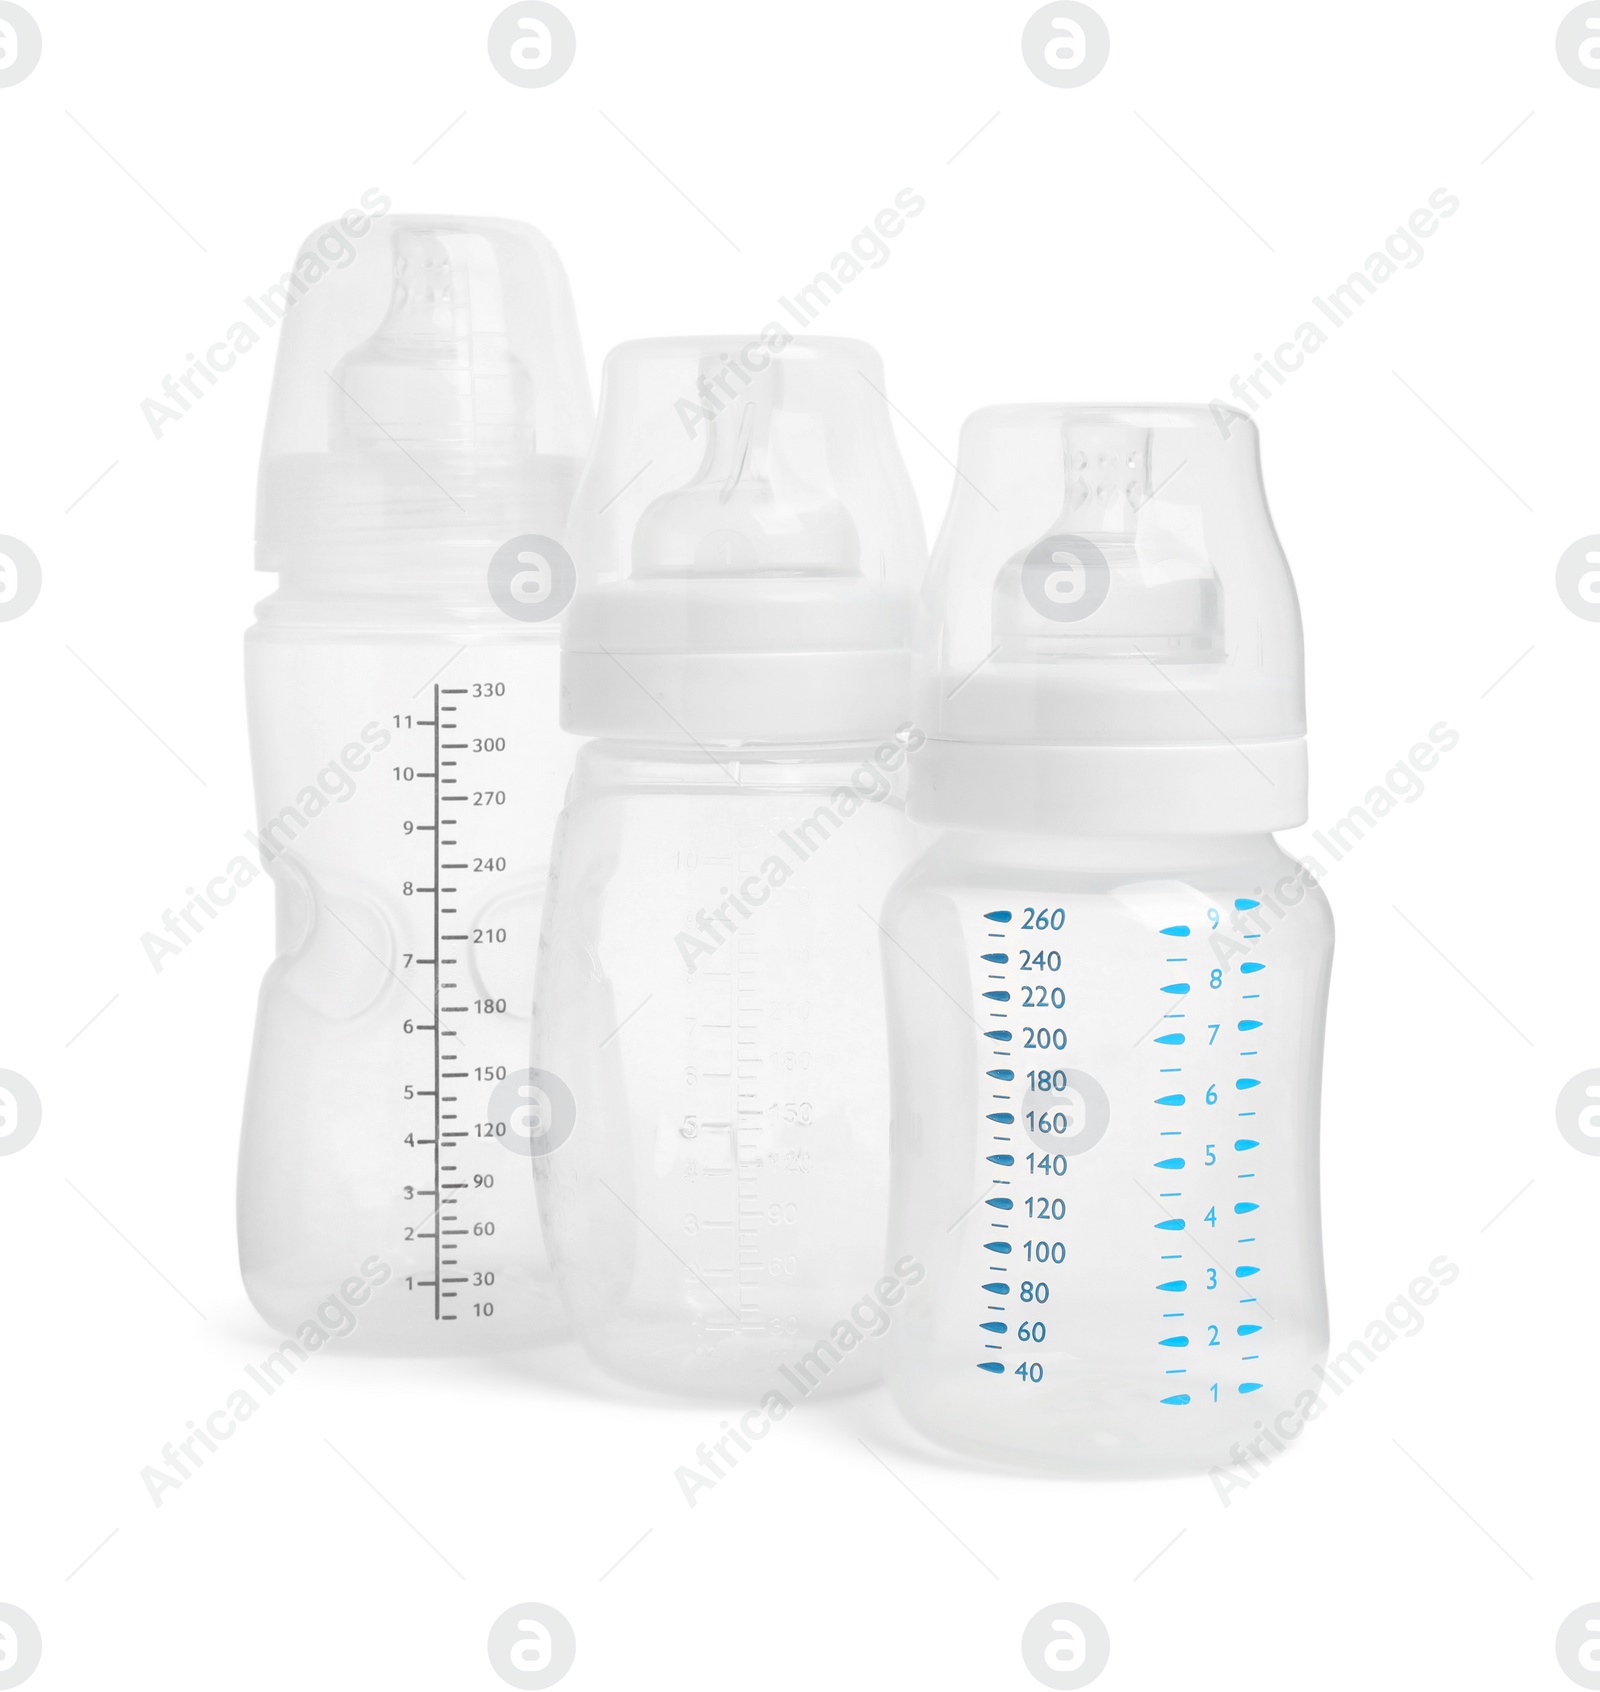 Photo of Three empty feeding bottles for baby milk on white background